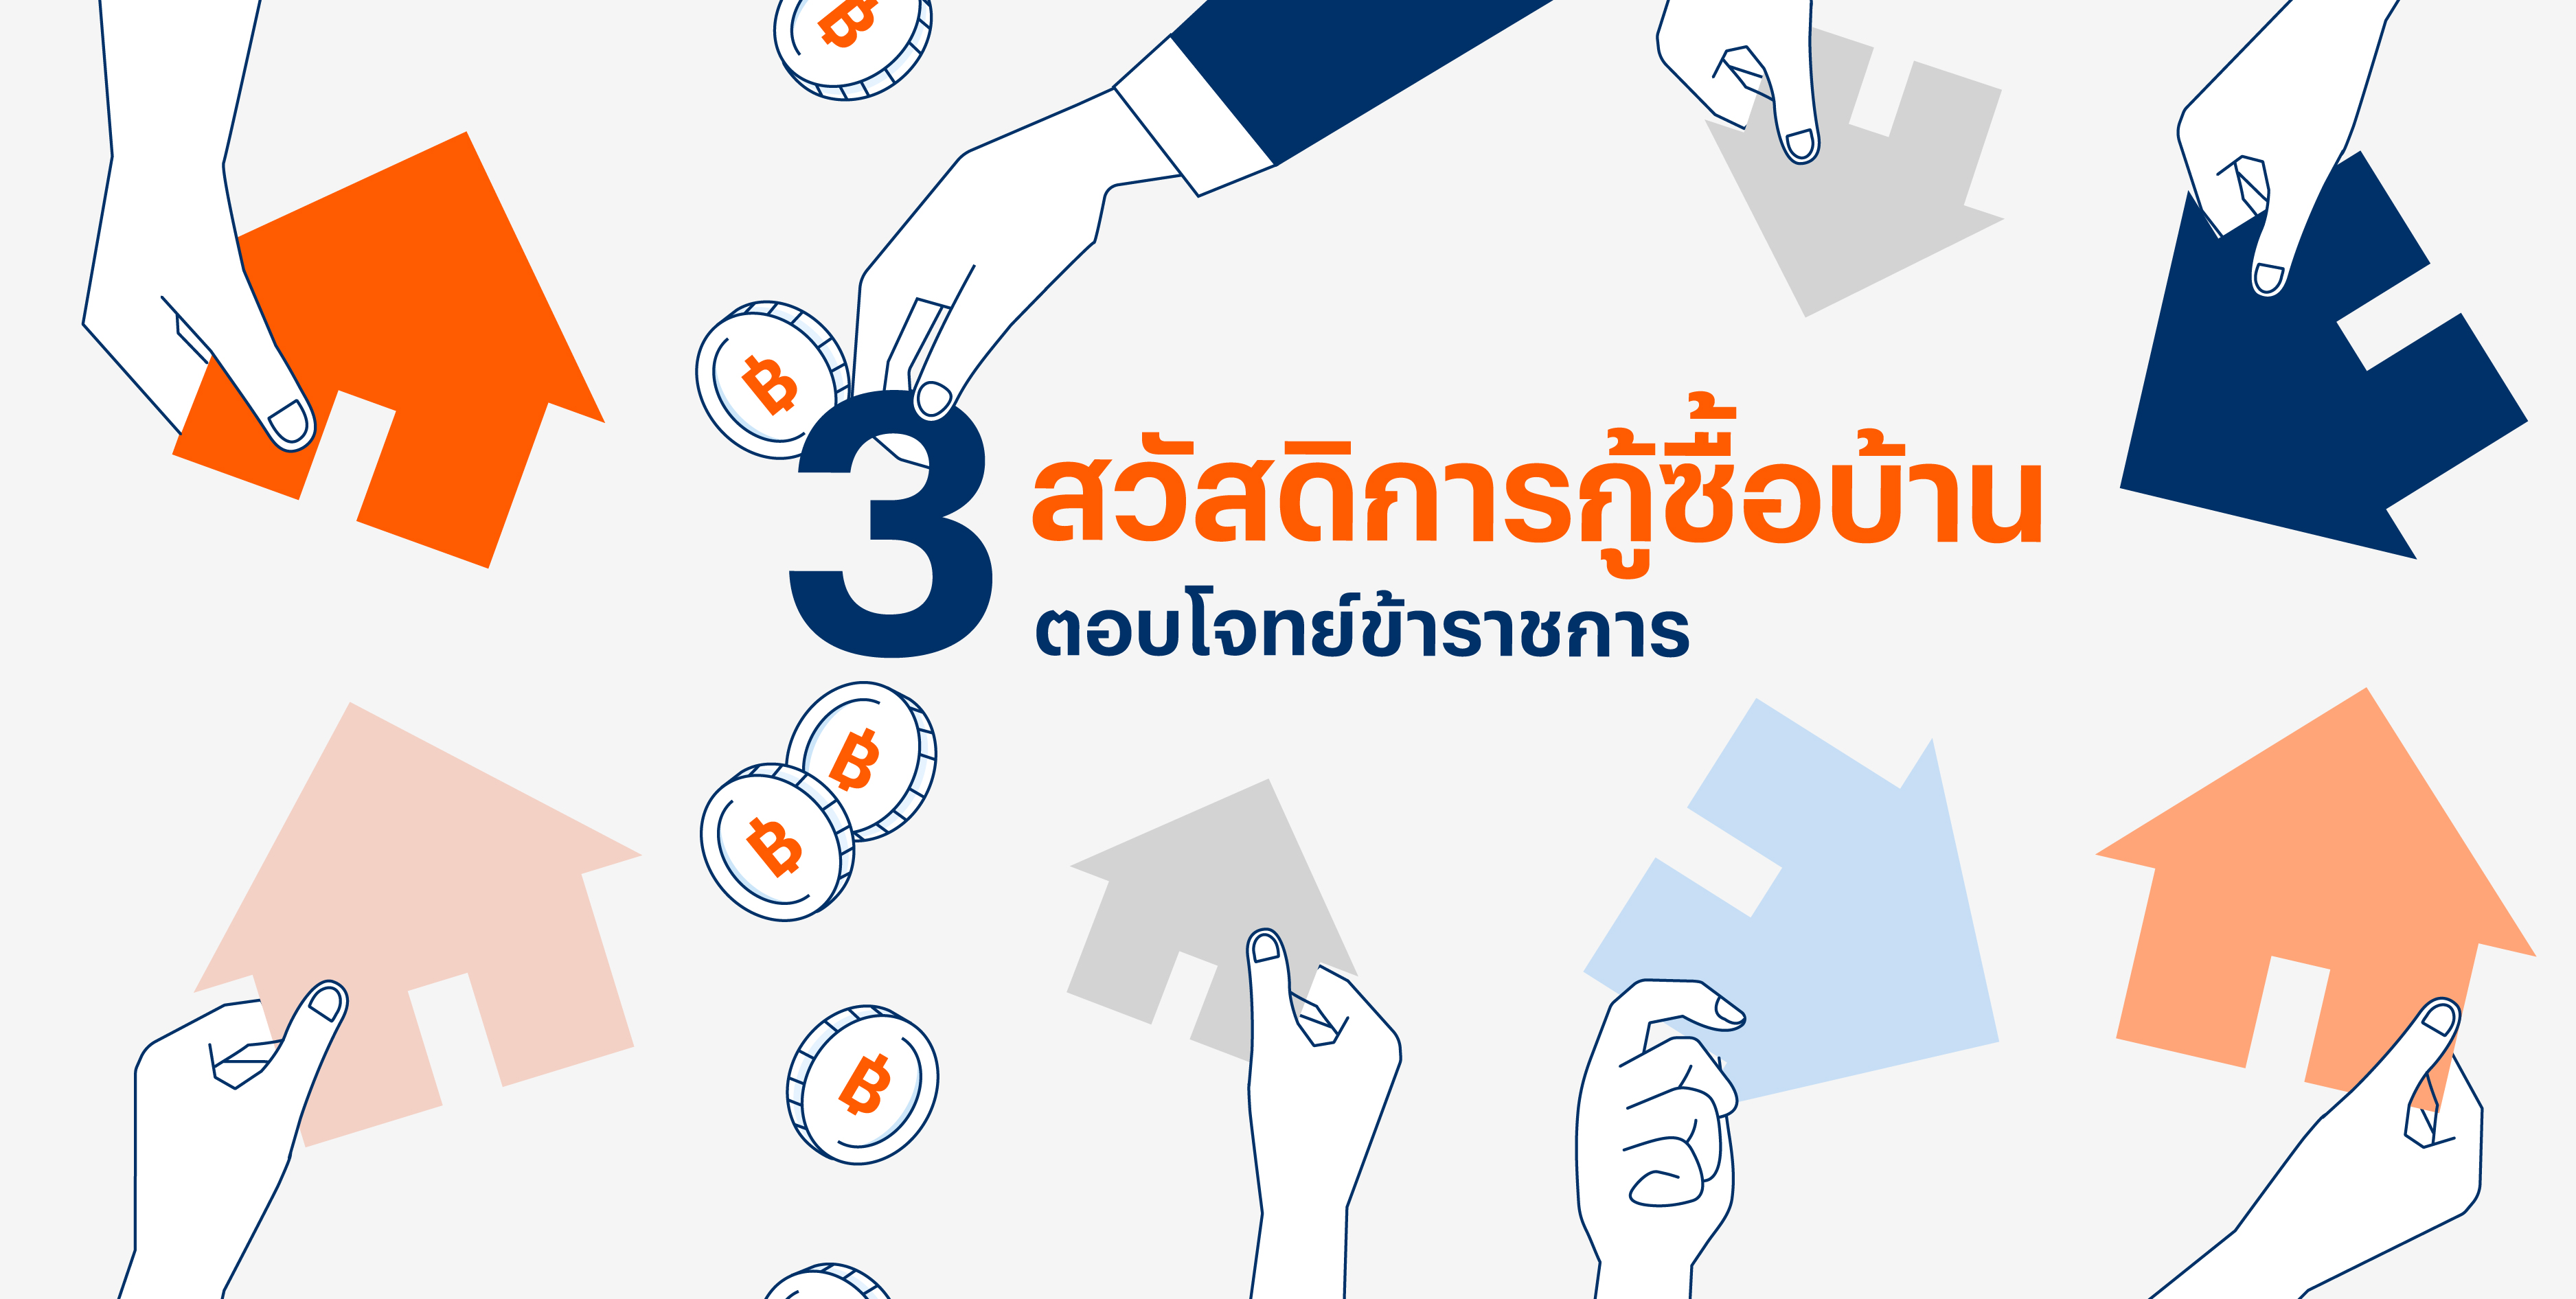 3 สวัสดิการกู้ซื้อบ้าน สินเชื่อบ้านข้าราชการ รัฐวิสาหกิจ จากธนาคาร ธอส. ทหารไทย กรุงไทย